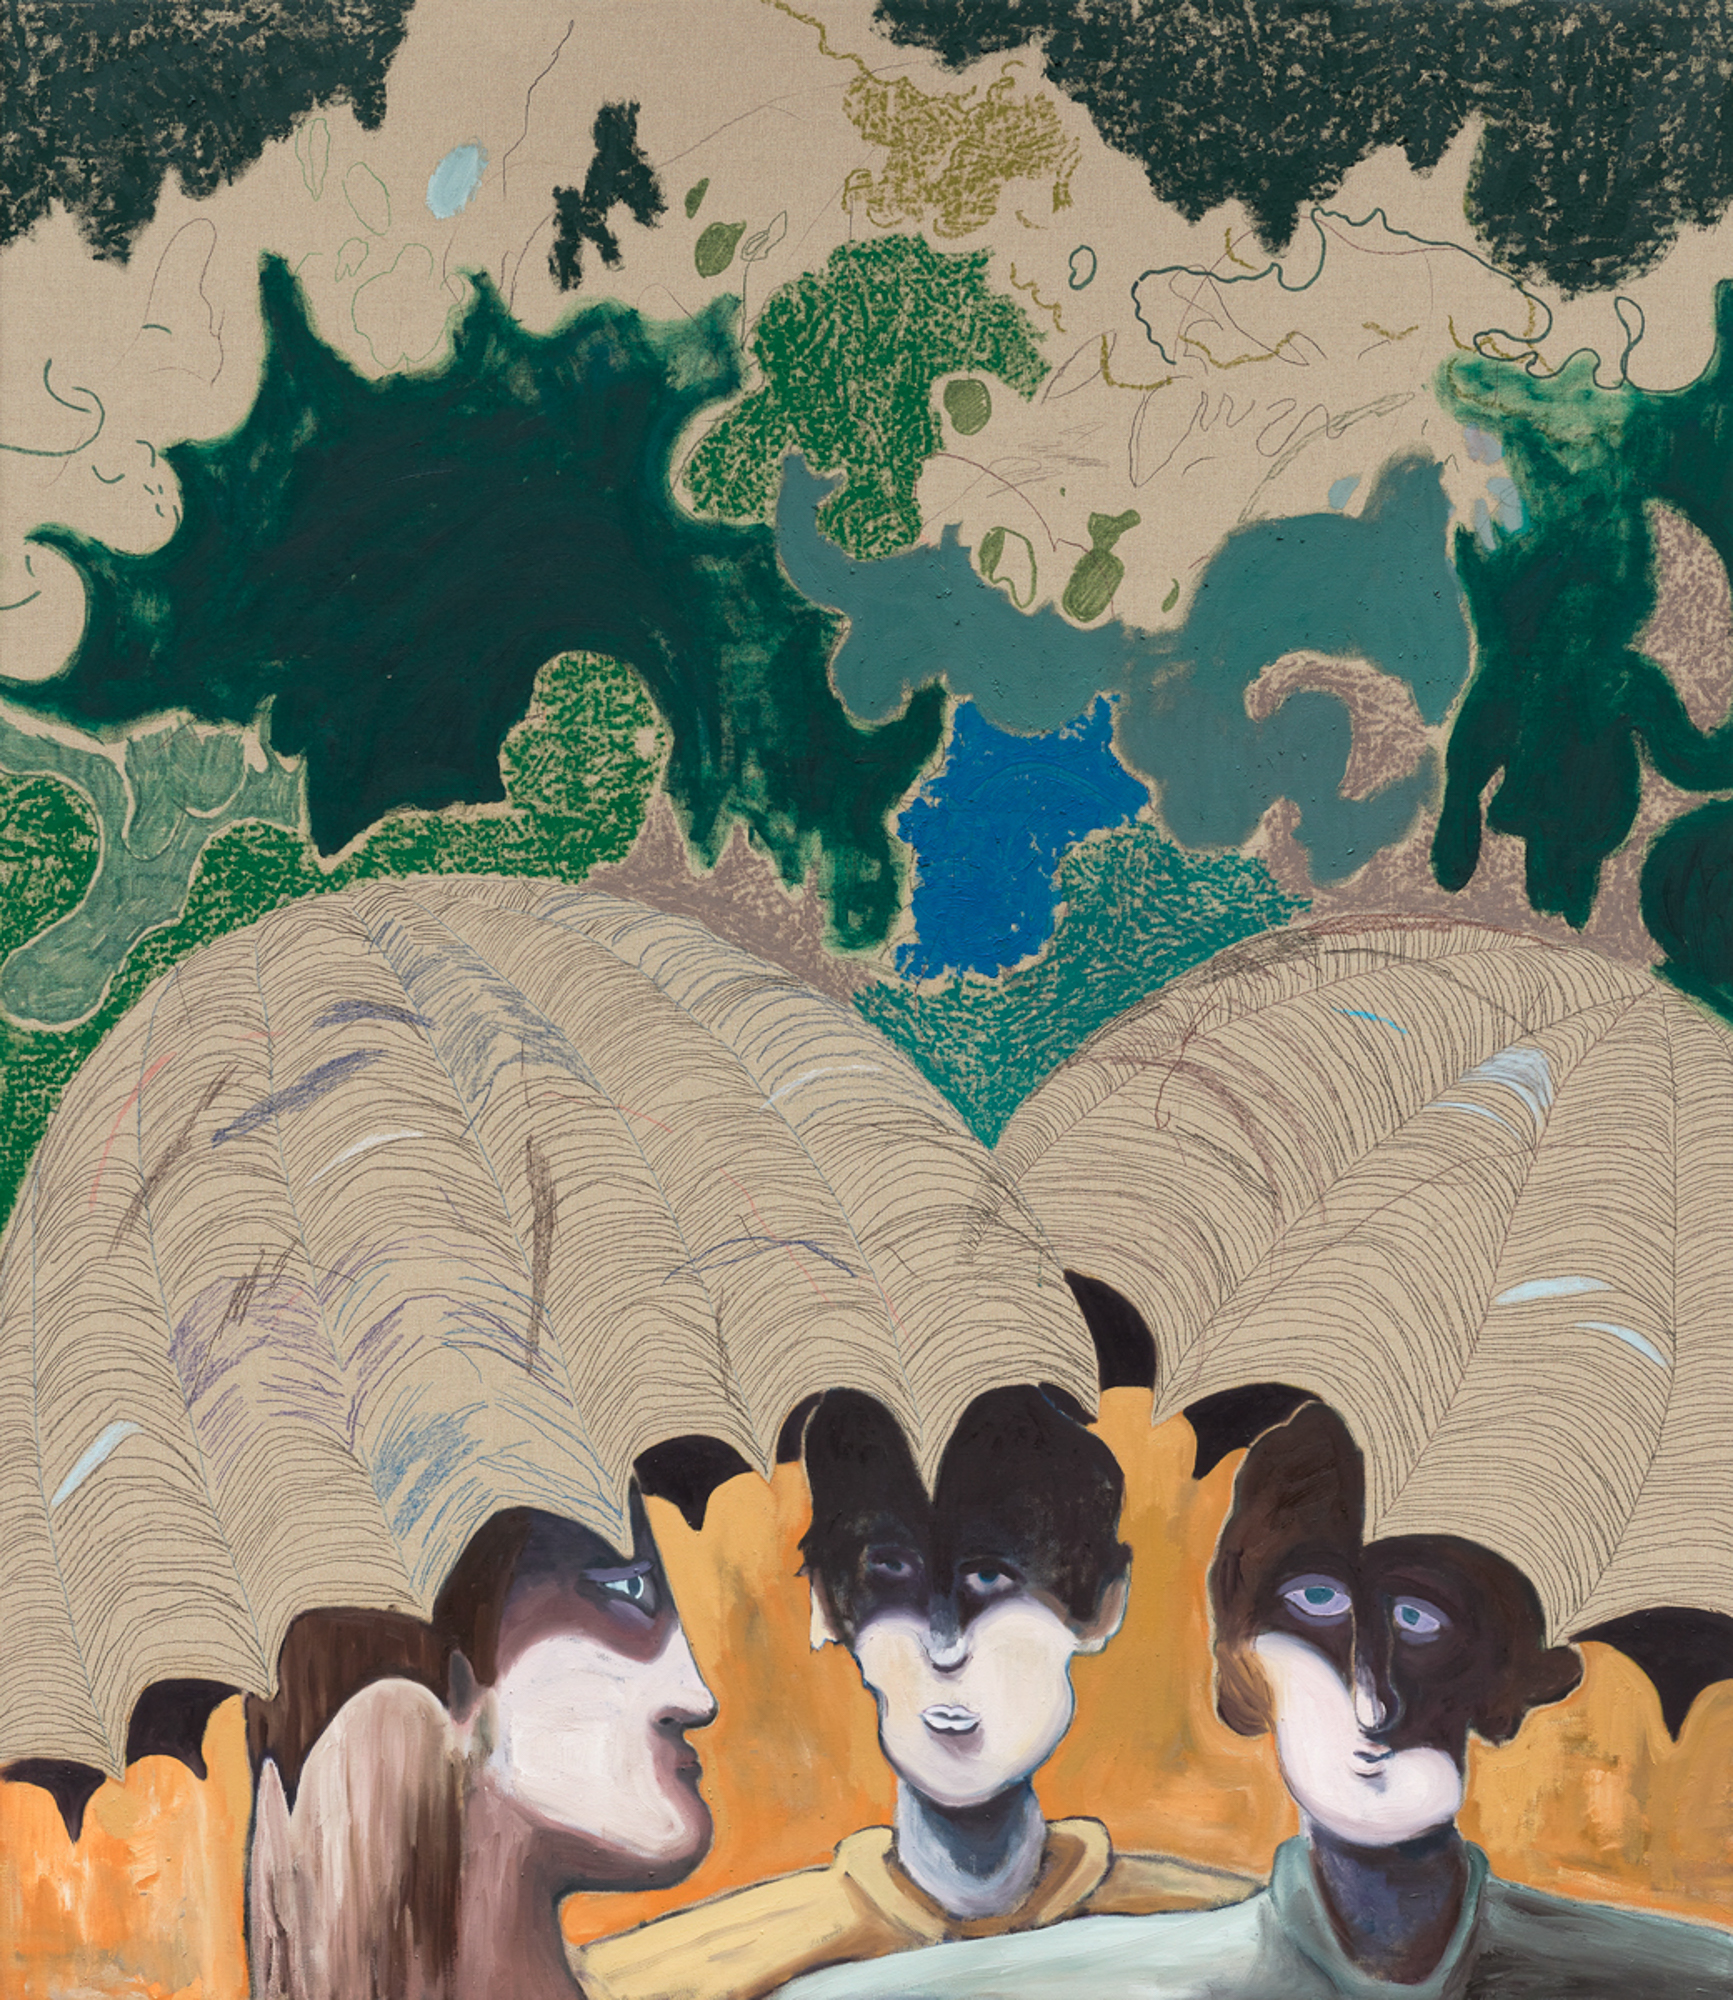 L‘Ombrelle à Trois, 2020, mixed media on canvas, 150 x 130 cm